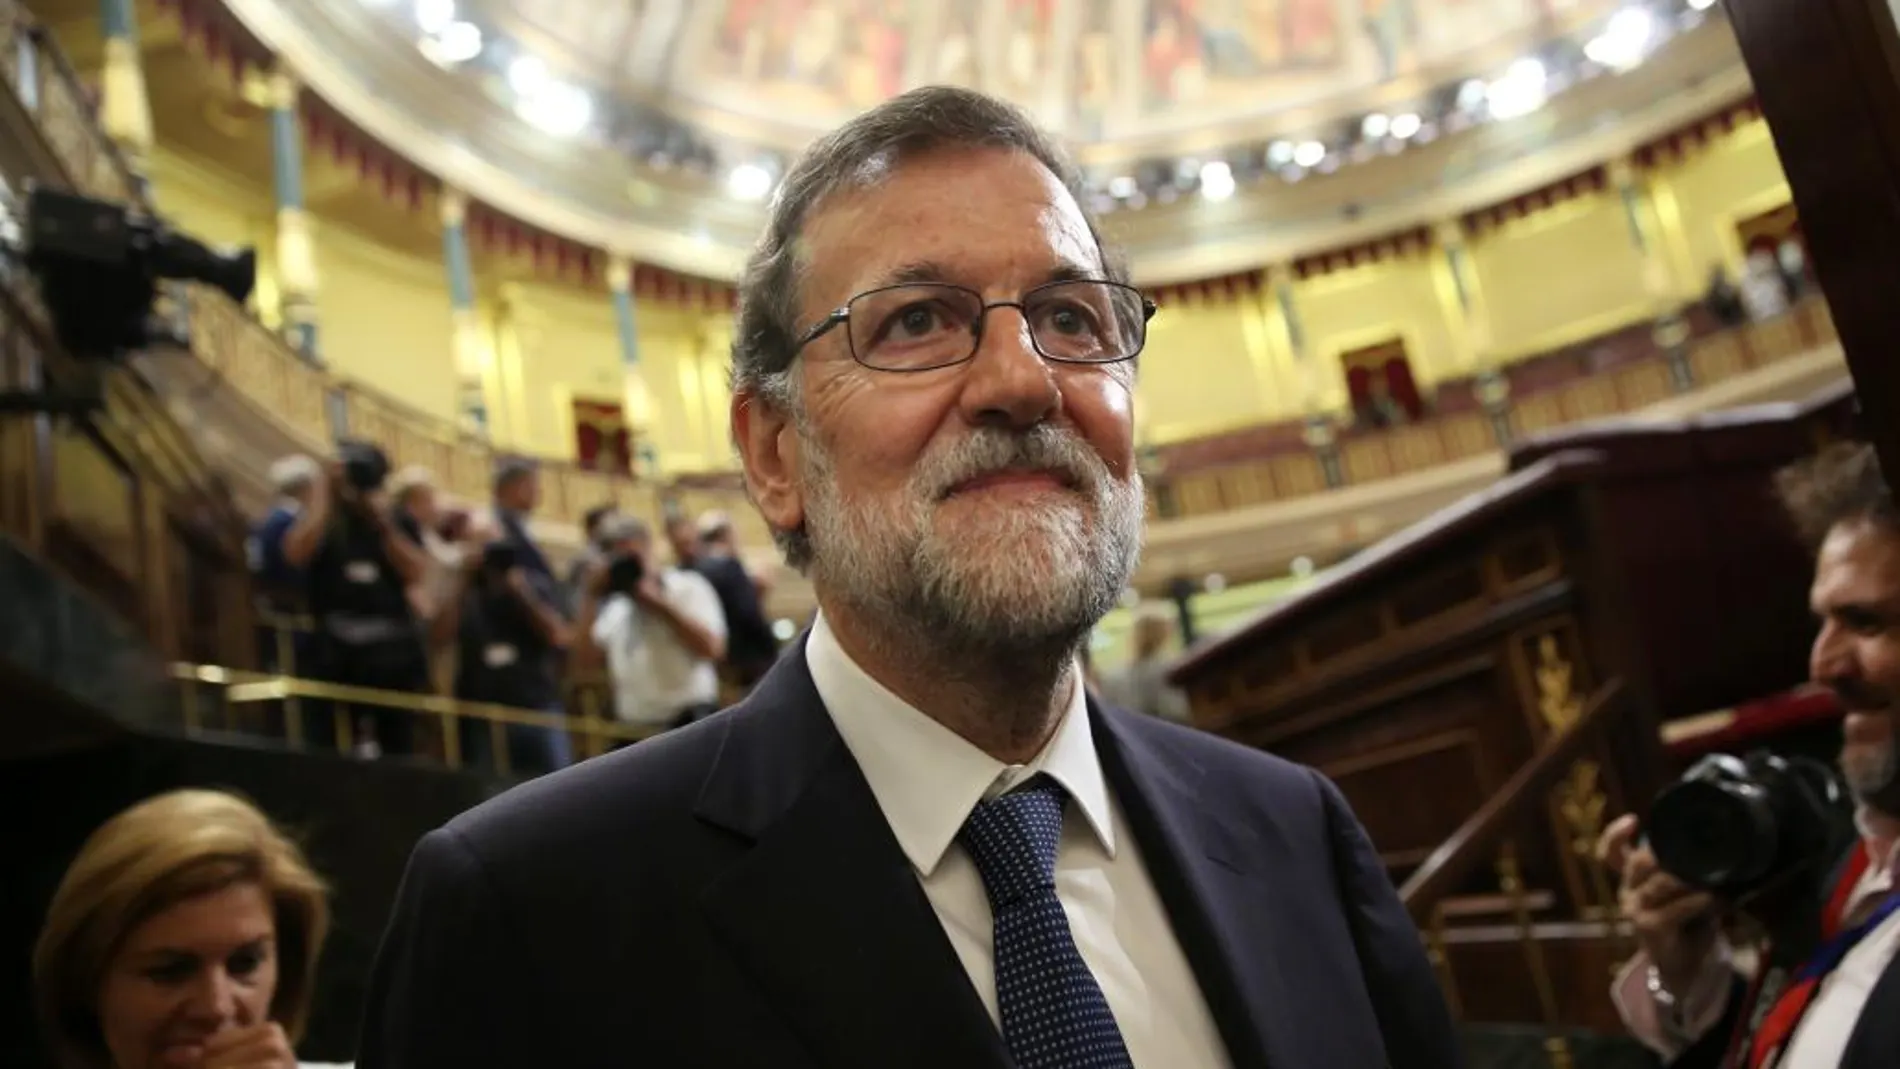 España está viendo los resultados de las reformas estructurales aplicadas por el Gobierno de Mariano Rajoy, señala la revista